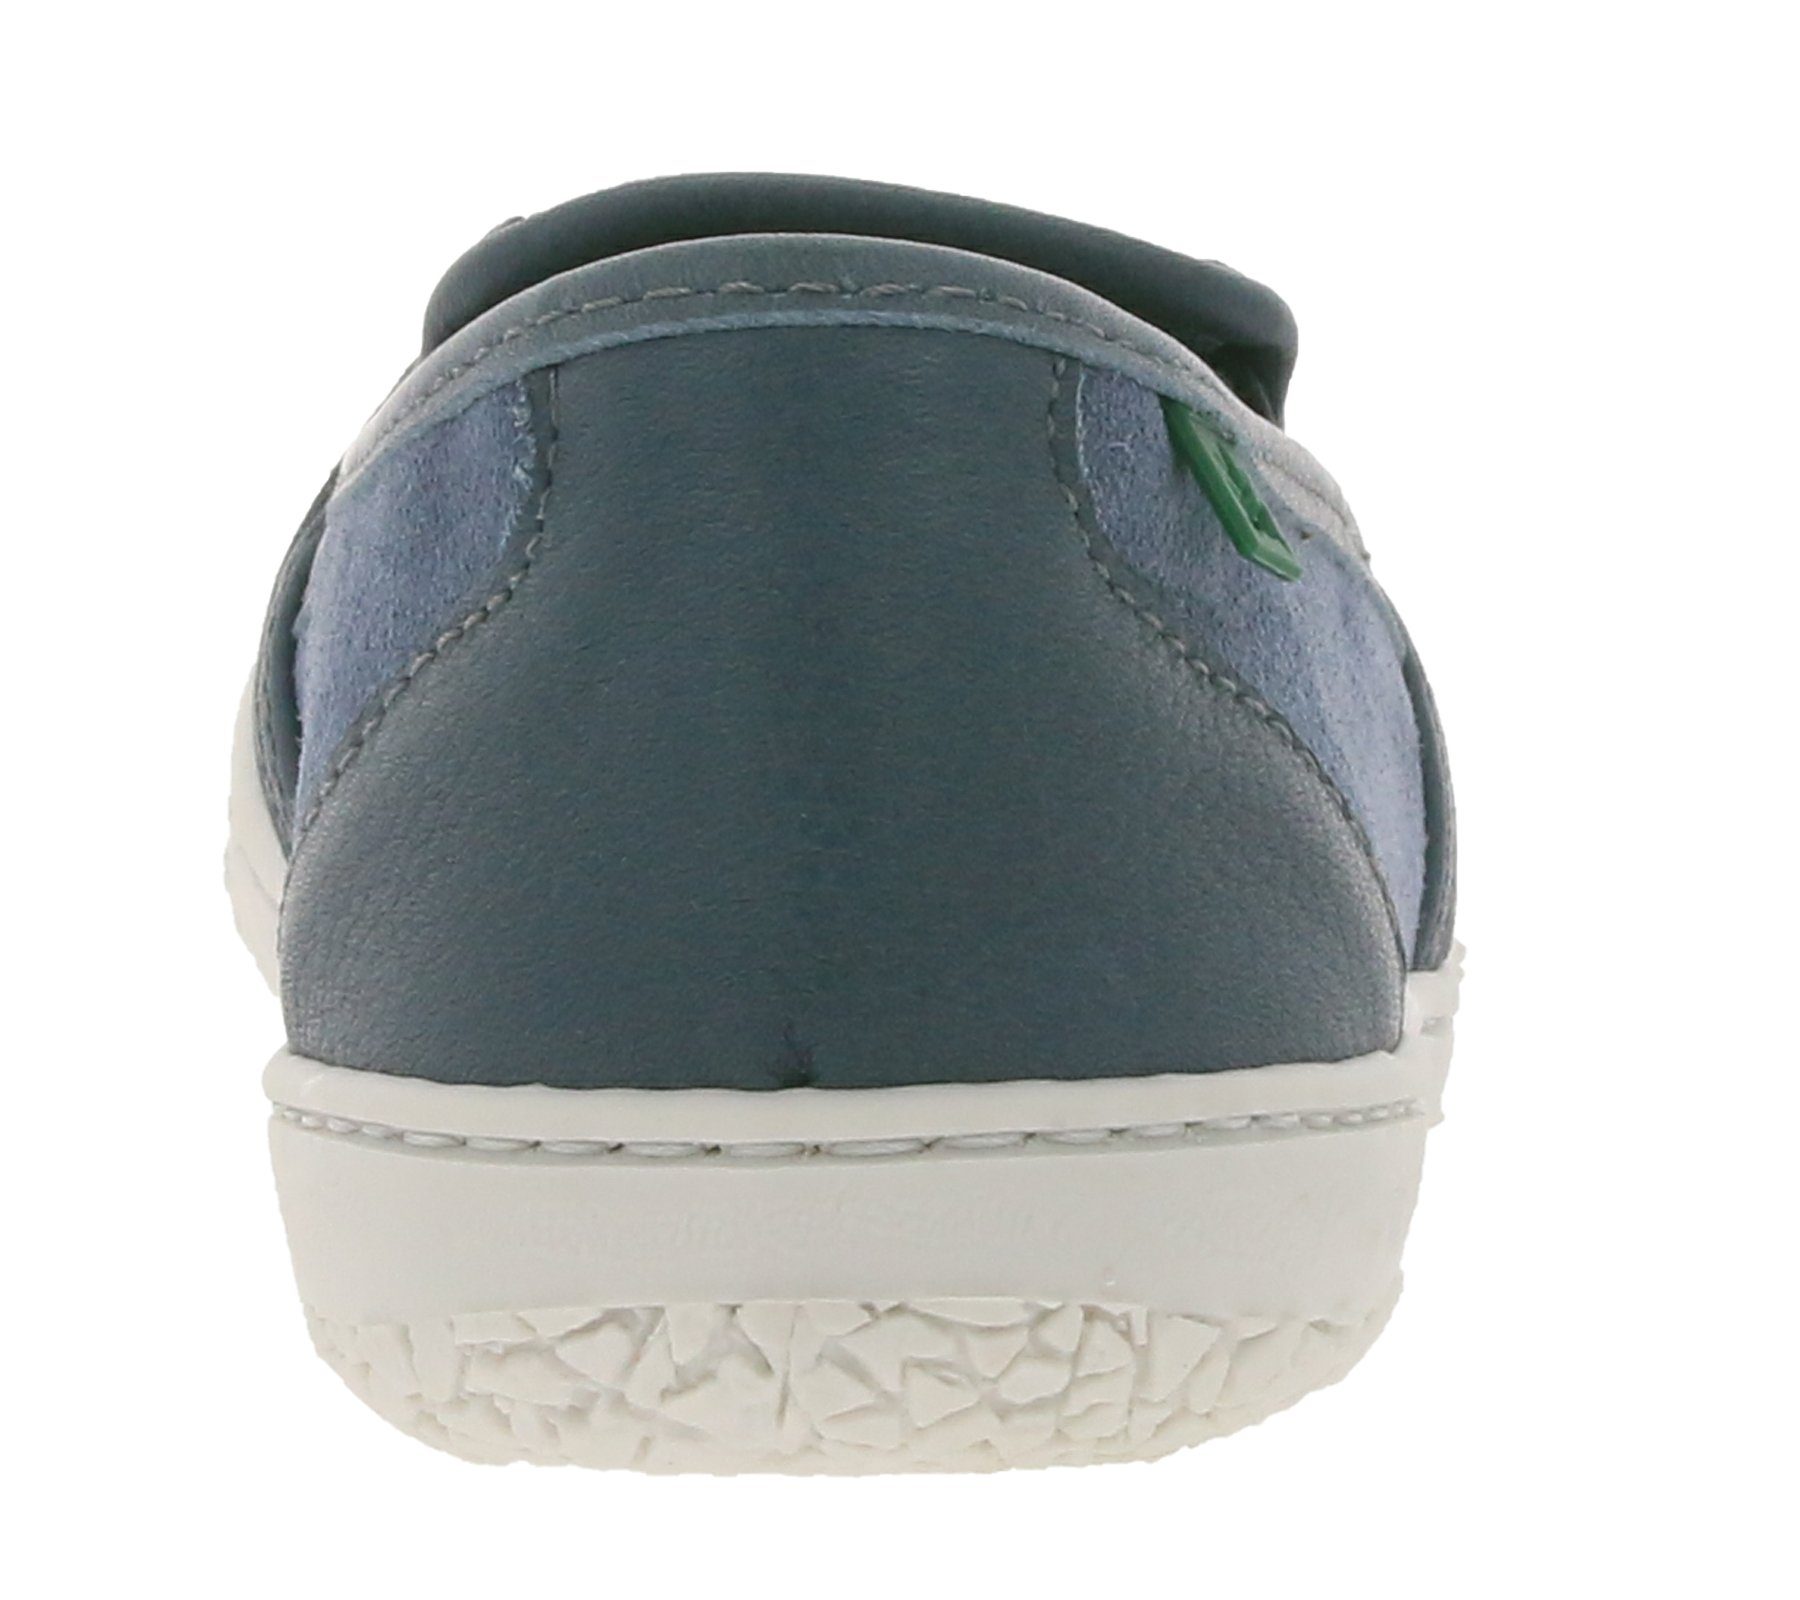 El Halbschuhe Sommer-Schuhe ohne Blau Yuyuan El Kinder Echtleder-Slipper sportliche Slipper Verschluss Naturalista Naturalista